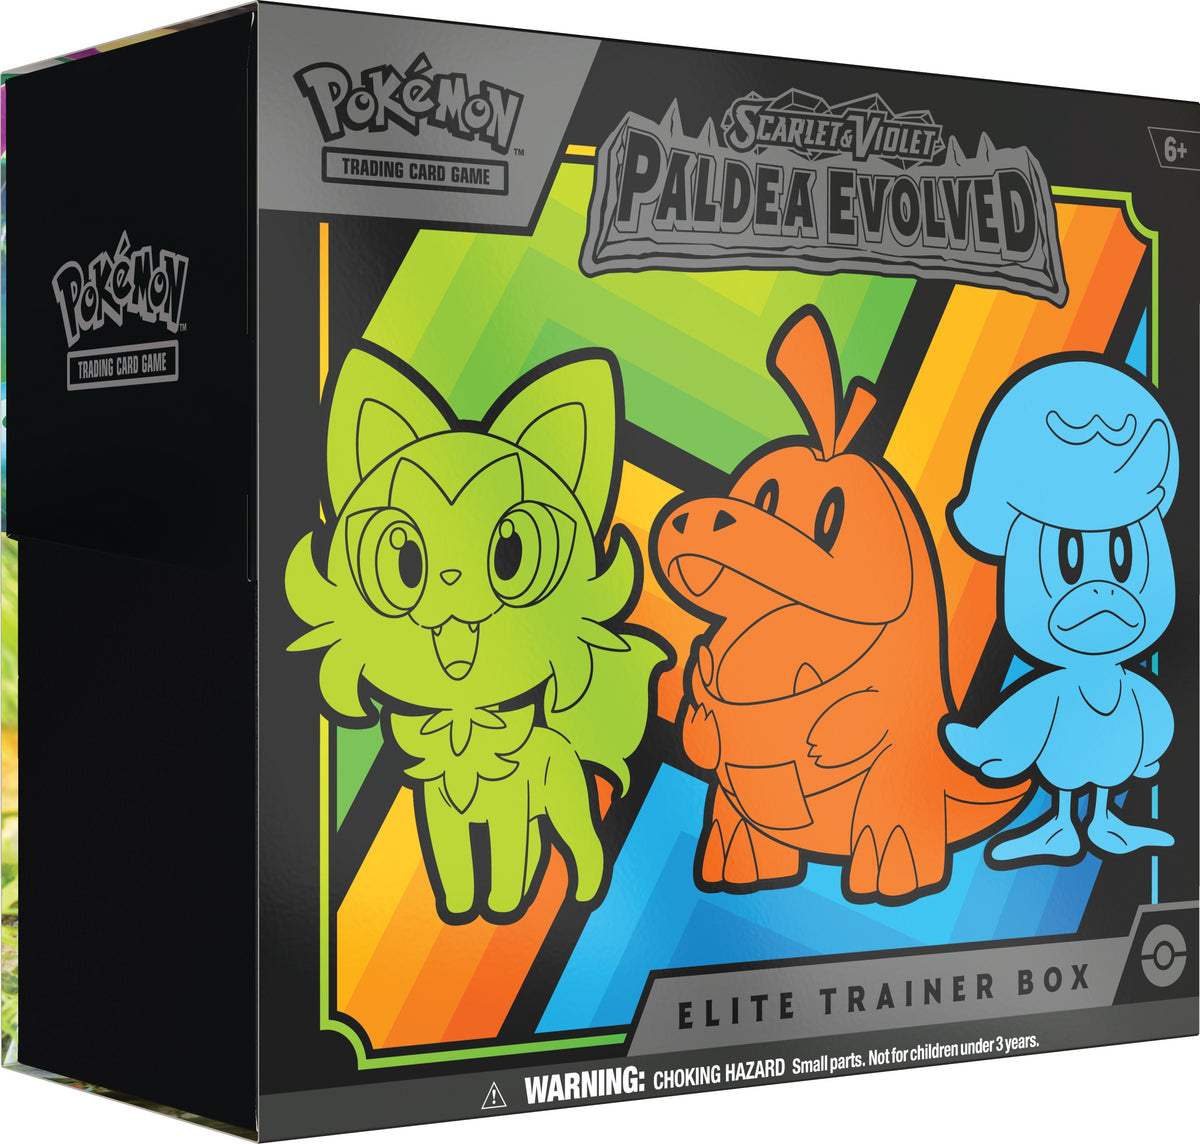 Pokémon - Scarlet & Violet 2: Paldea Evolved - Elite Trainer Box